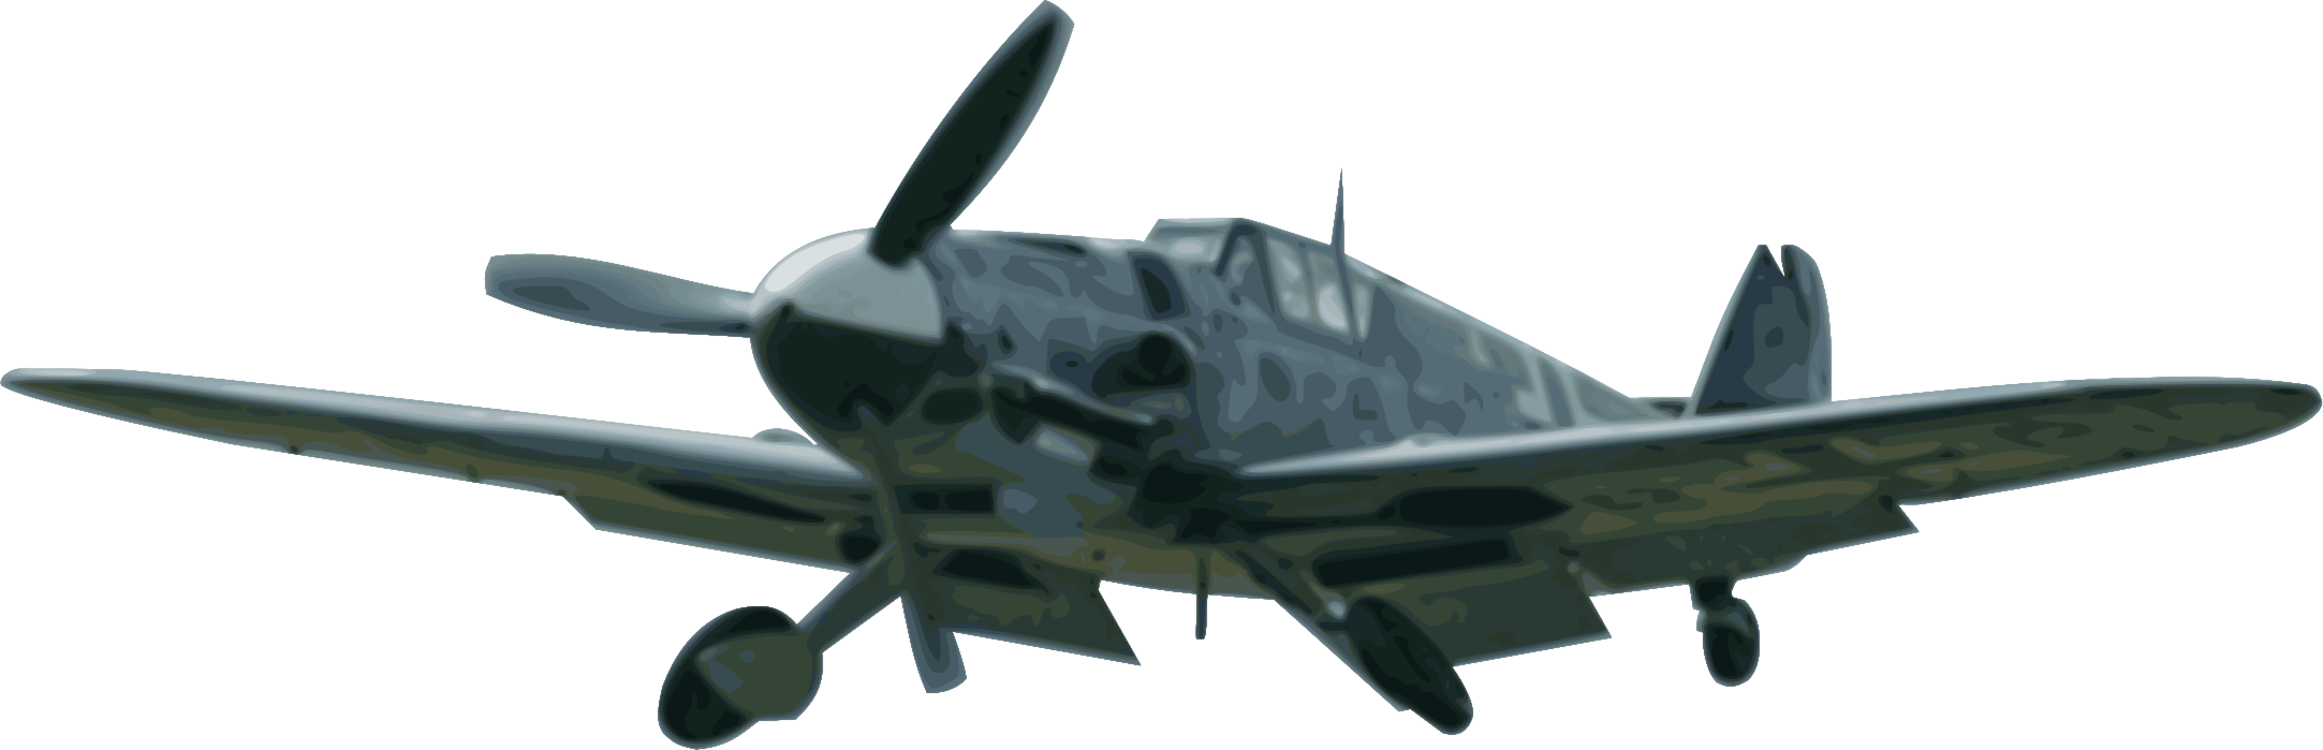 Propeller Driven Aircraft,Focke Wulf Fw 190,Jet Aircraft